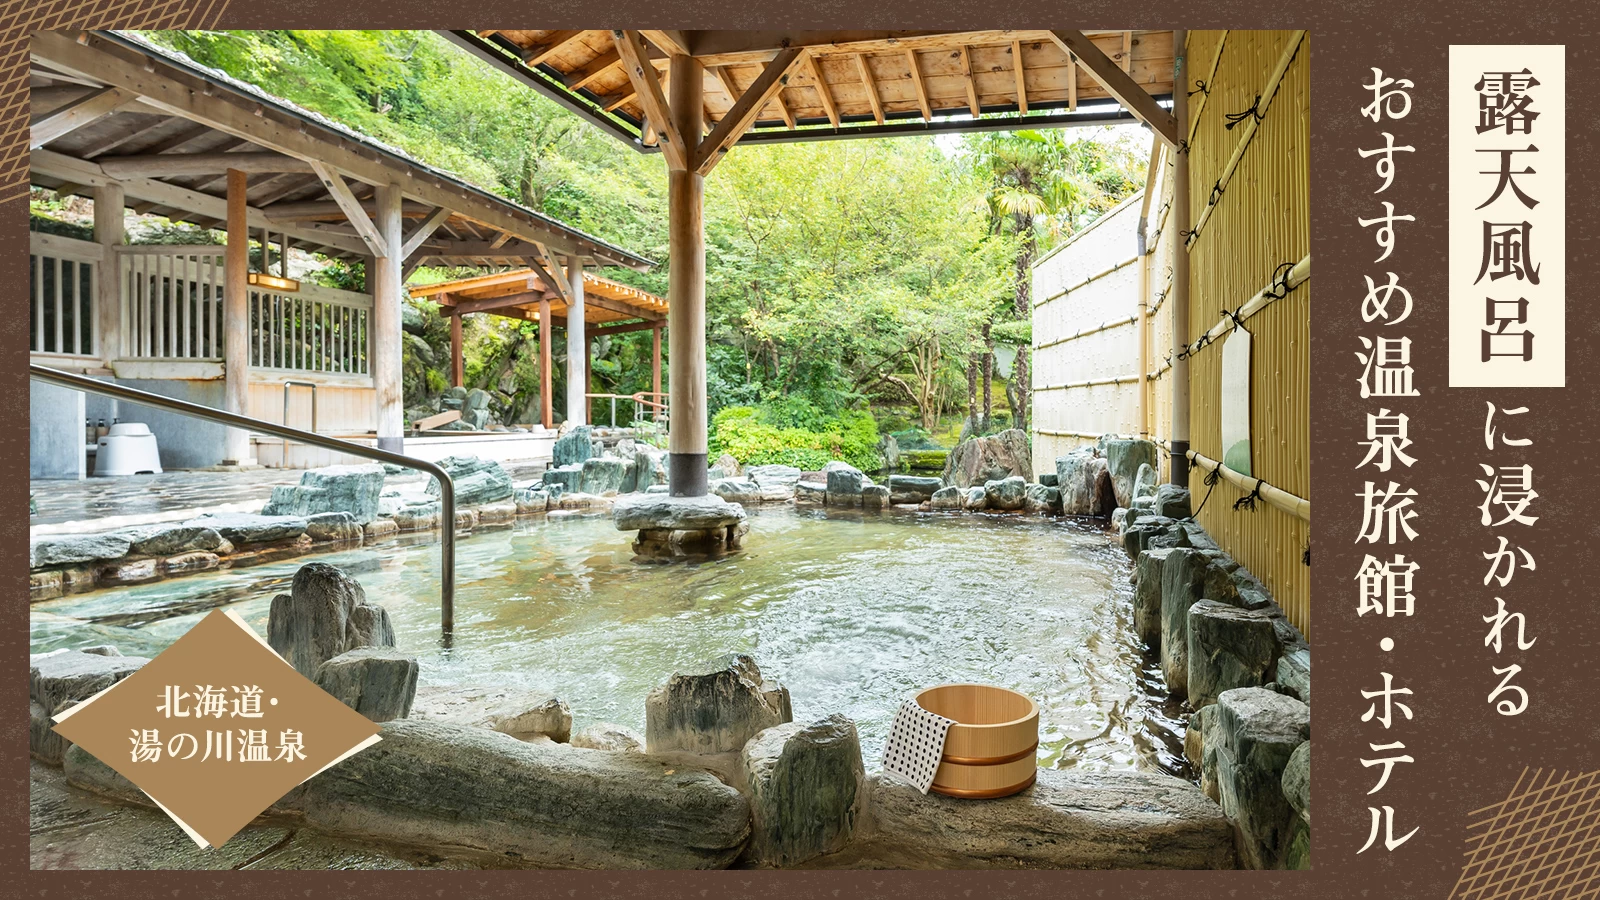 【北海道・湯の川温泉】露天風呂に浸かれるおすすめ温泉旅館・ホテル4選